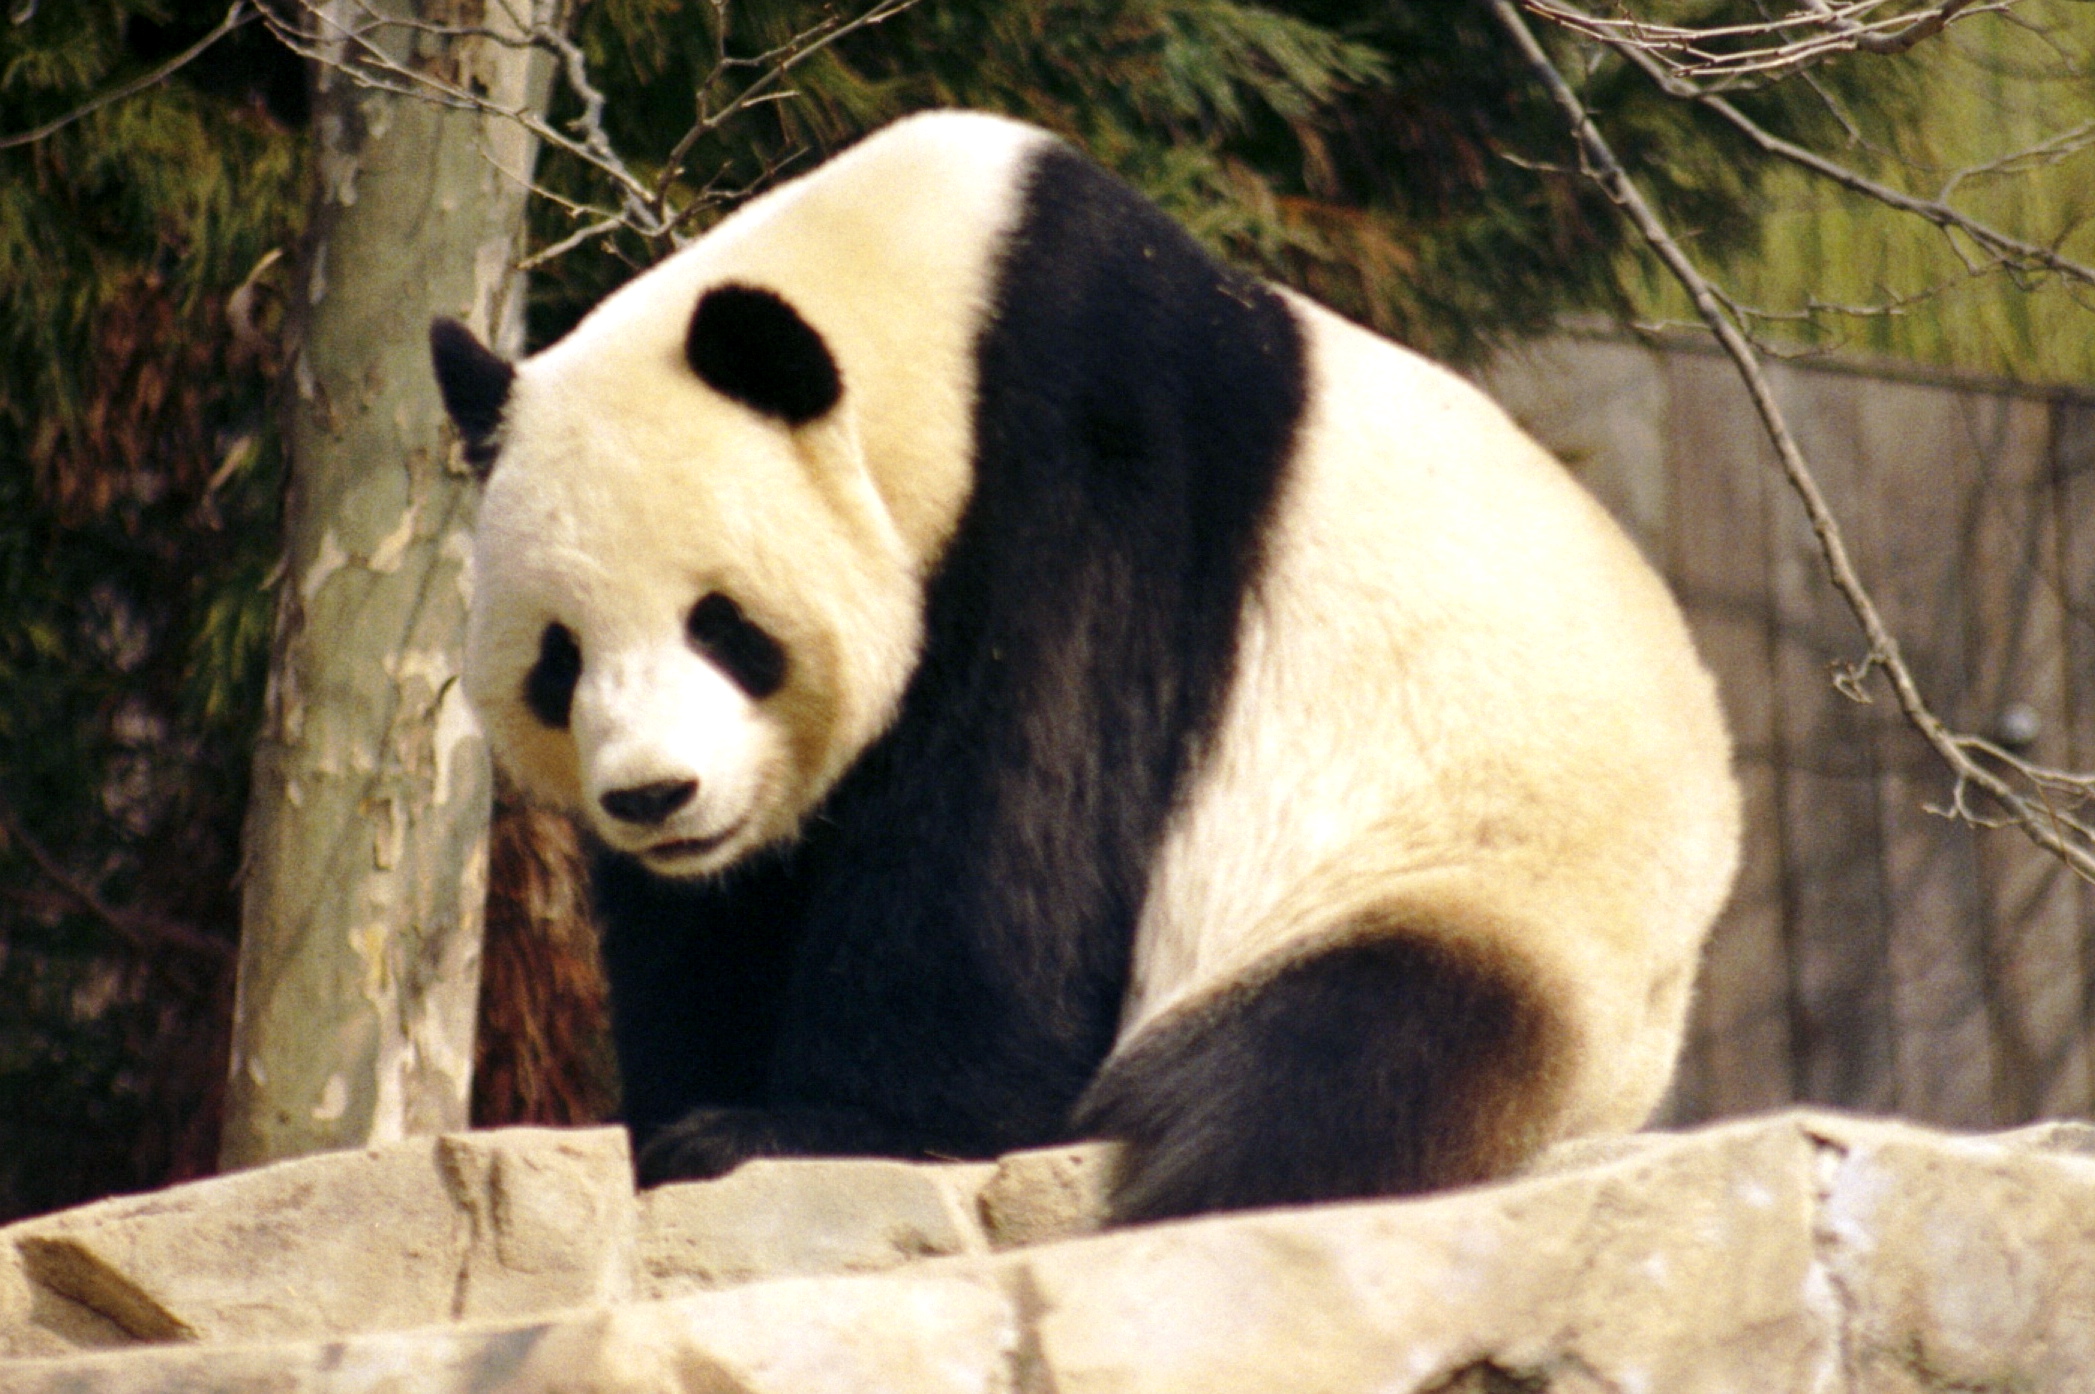 http://naturescrusaders.files.wordpress.com/2008/11/giant_panda_2004-03-2.jpg